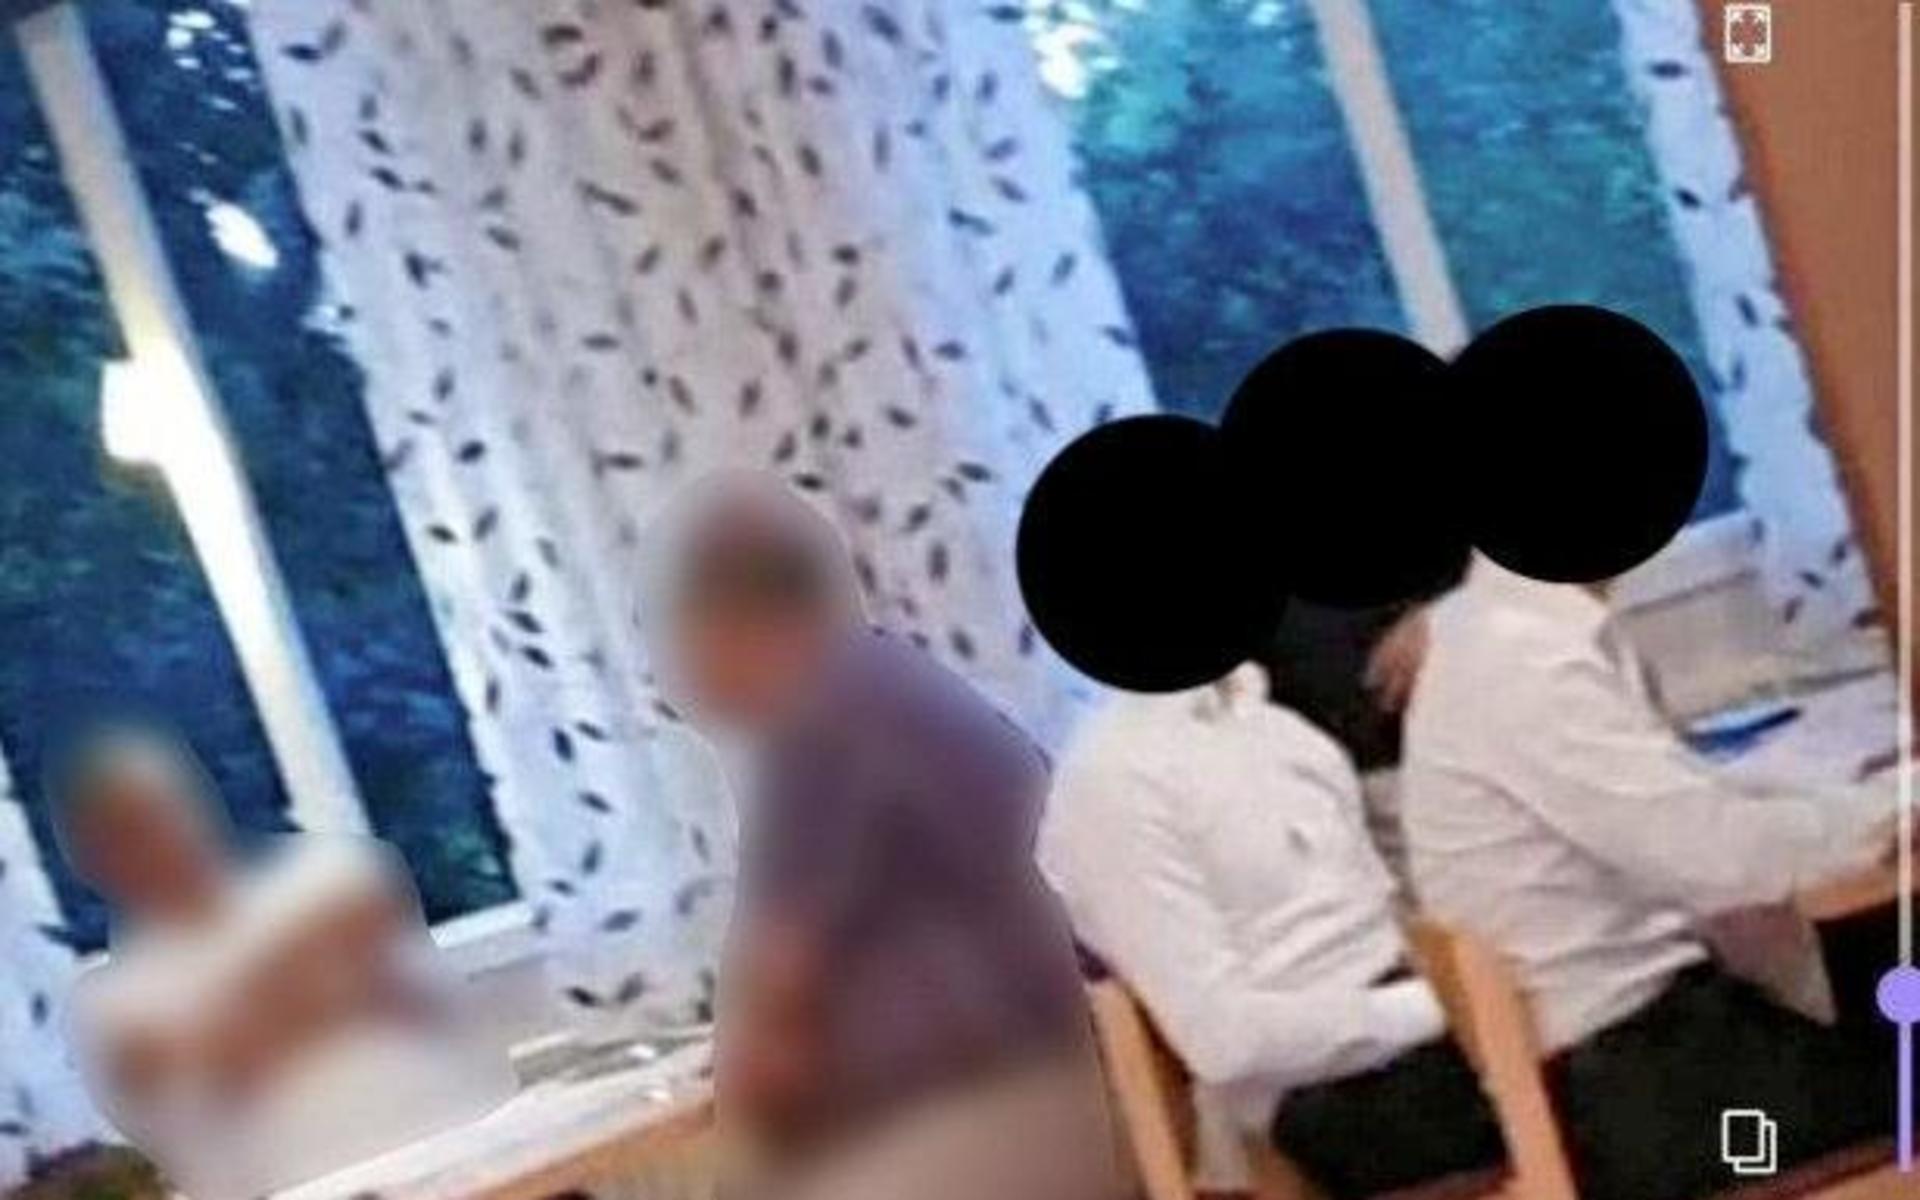 De nu dömda männen filmades under bröllopsfesten i Knäreds bygdegård på fredagen. Knivöverfallet mot en annan av bröllopsgästerna ägde rum strax före bröllopsceremonin som skulle hållas dagen efter. 